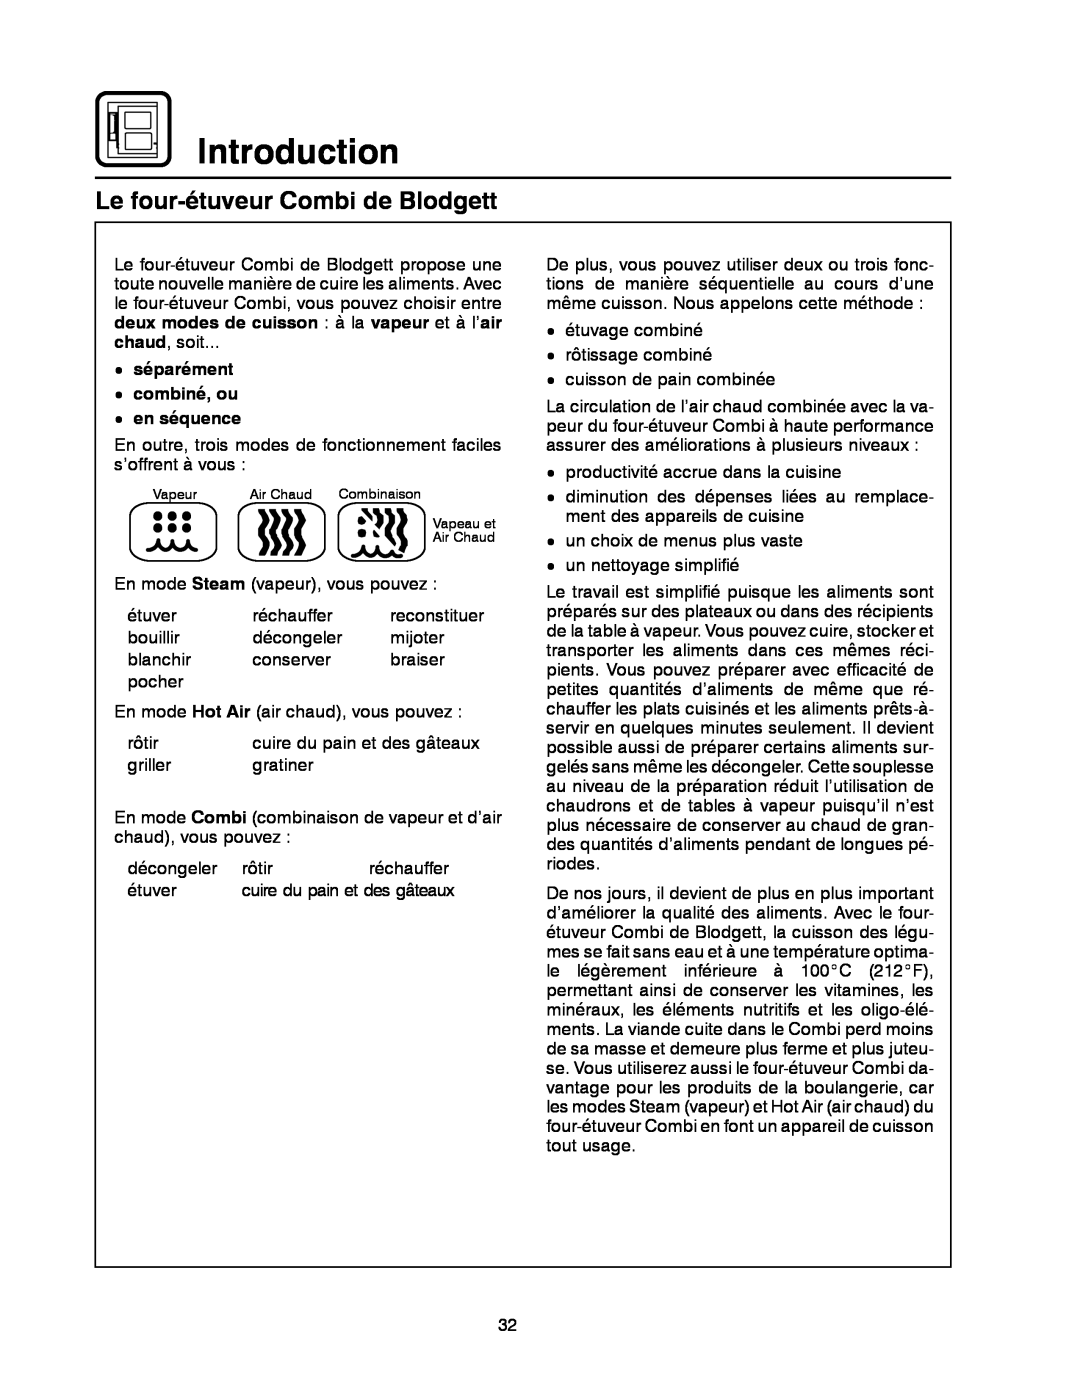 Blodgett BC-20G manual Le four-étuveur Combi de Blodgett, Introduction, deux modes de cuisson à la vapeur et à l’air 